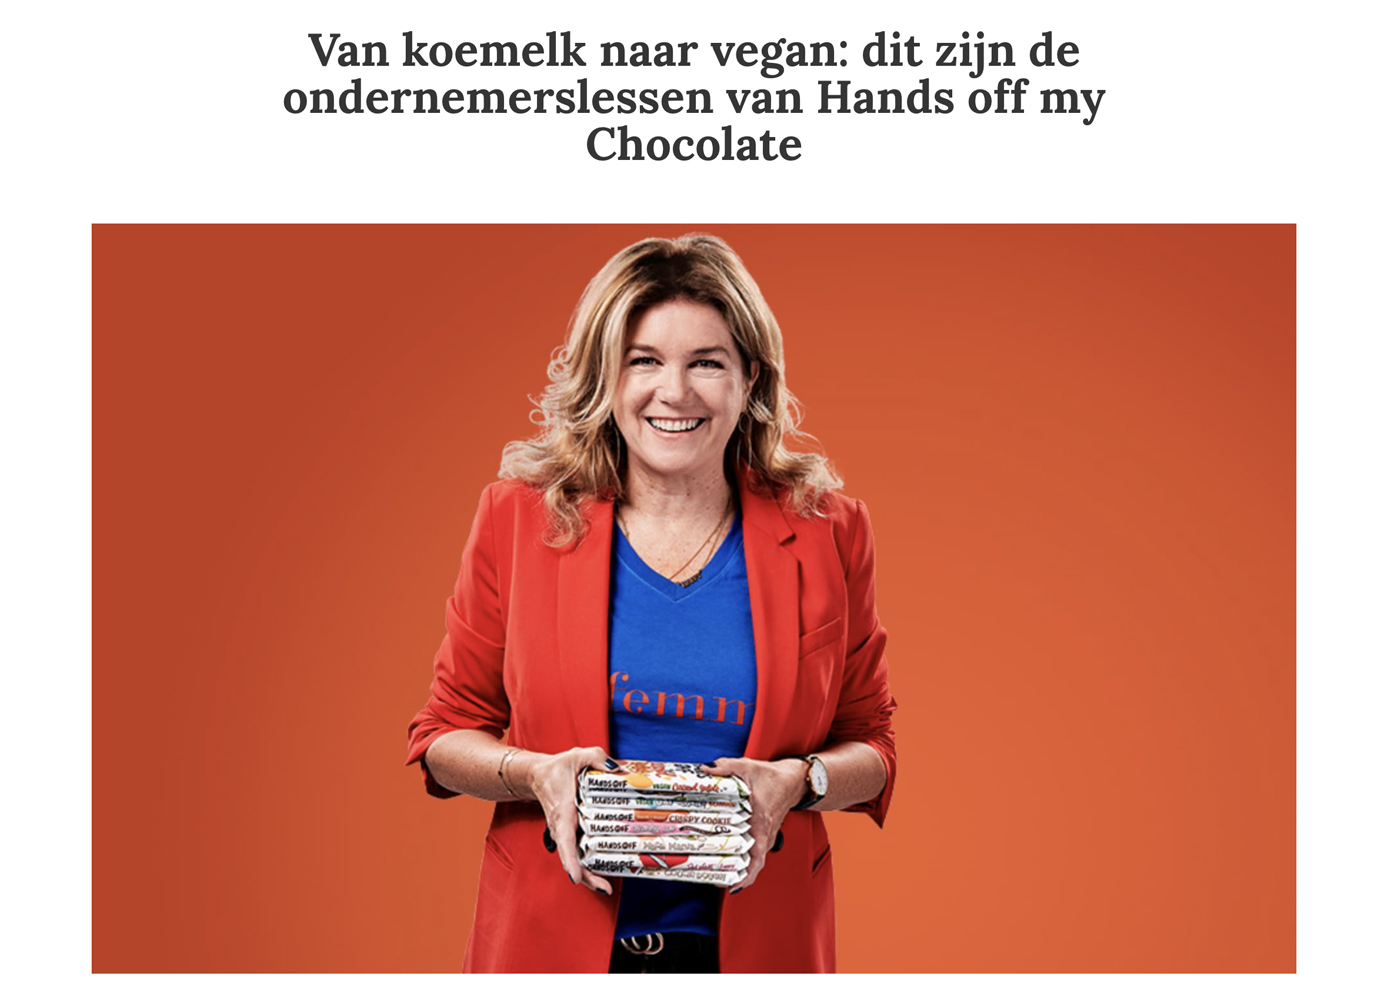 Van koemelk naar vegan: dit zijn de ondernemerslessen van Hands off my Chocolate